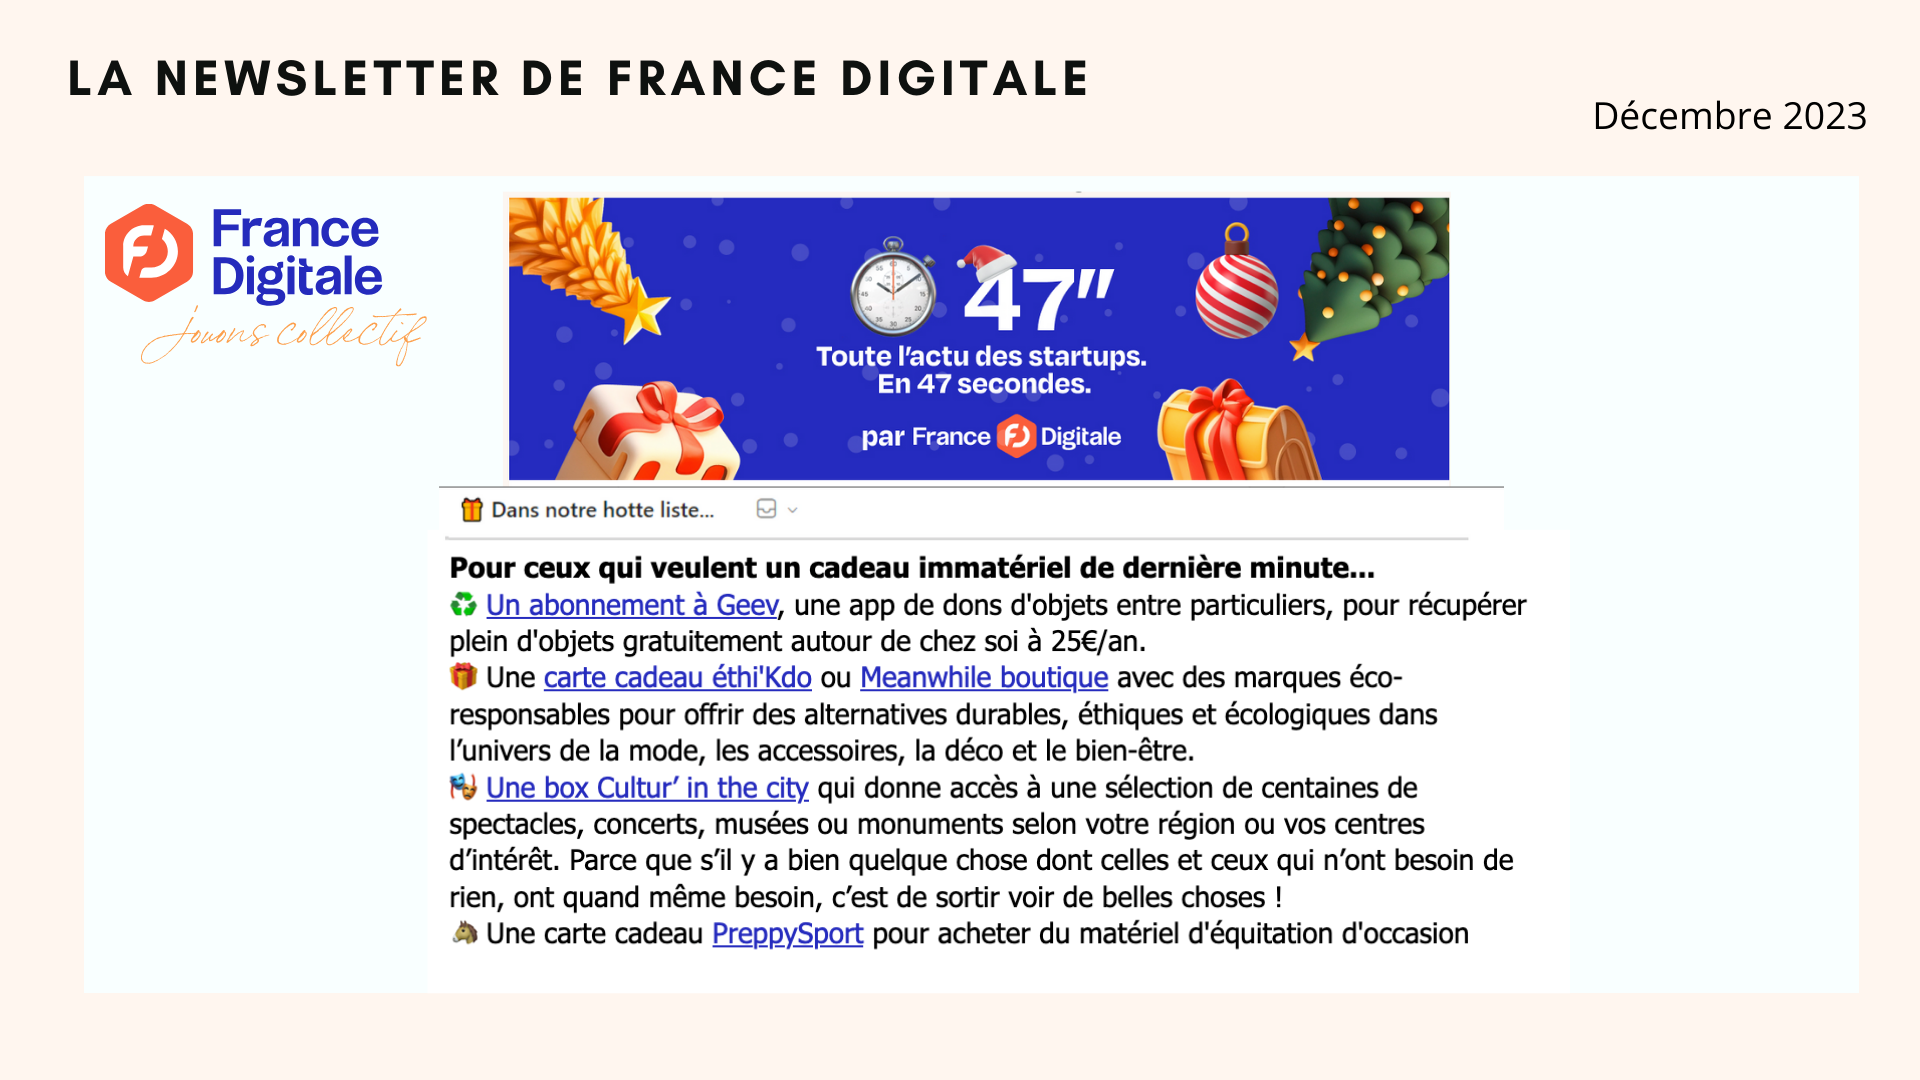 meanwhile boutique dans la newsletter de france digitale